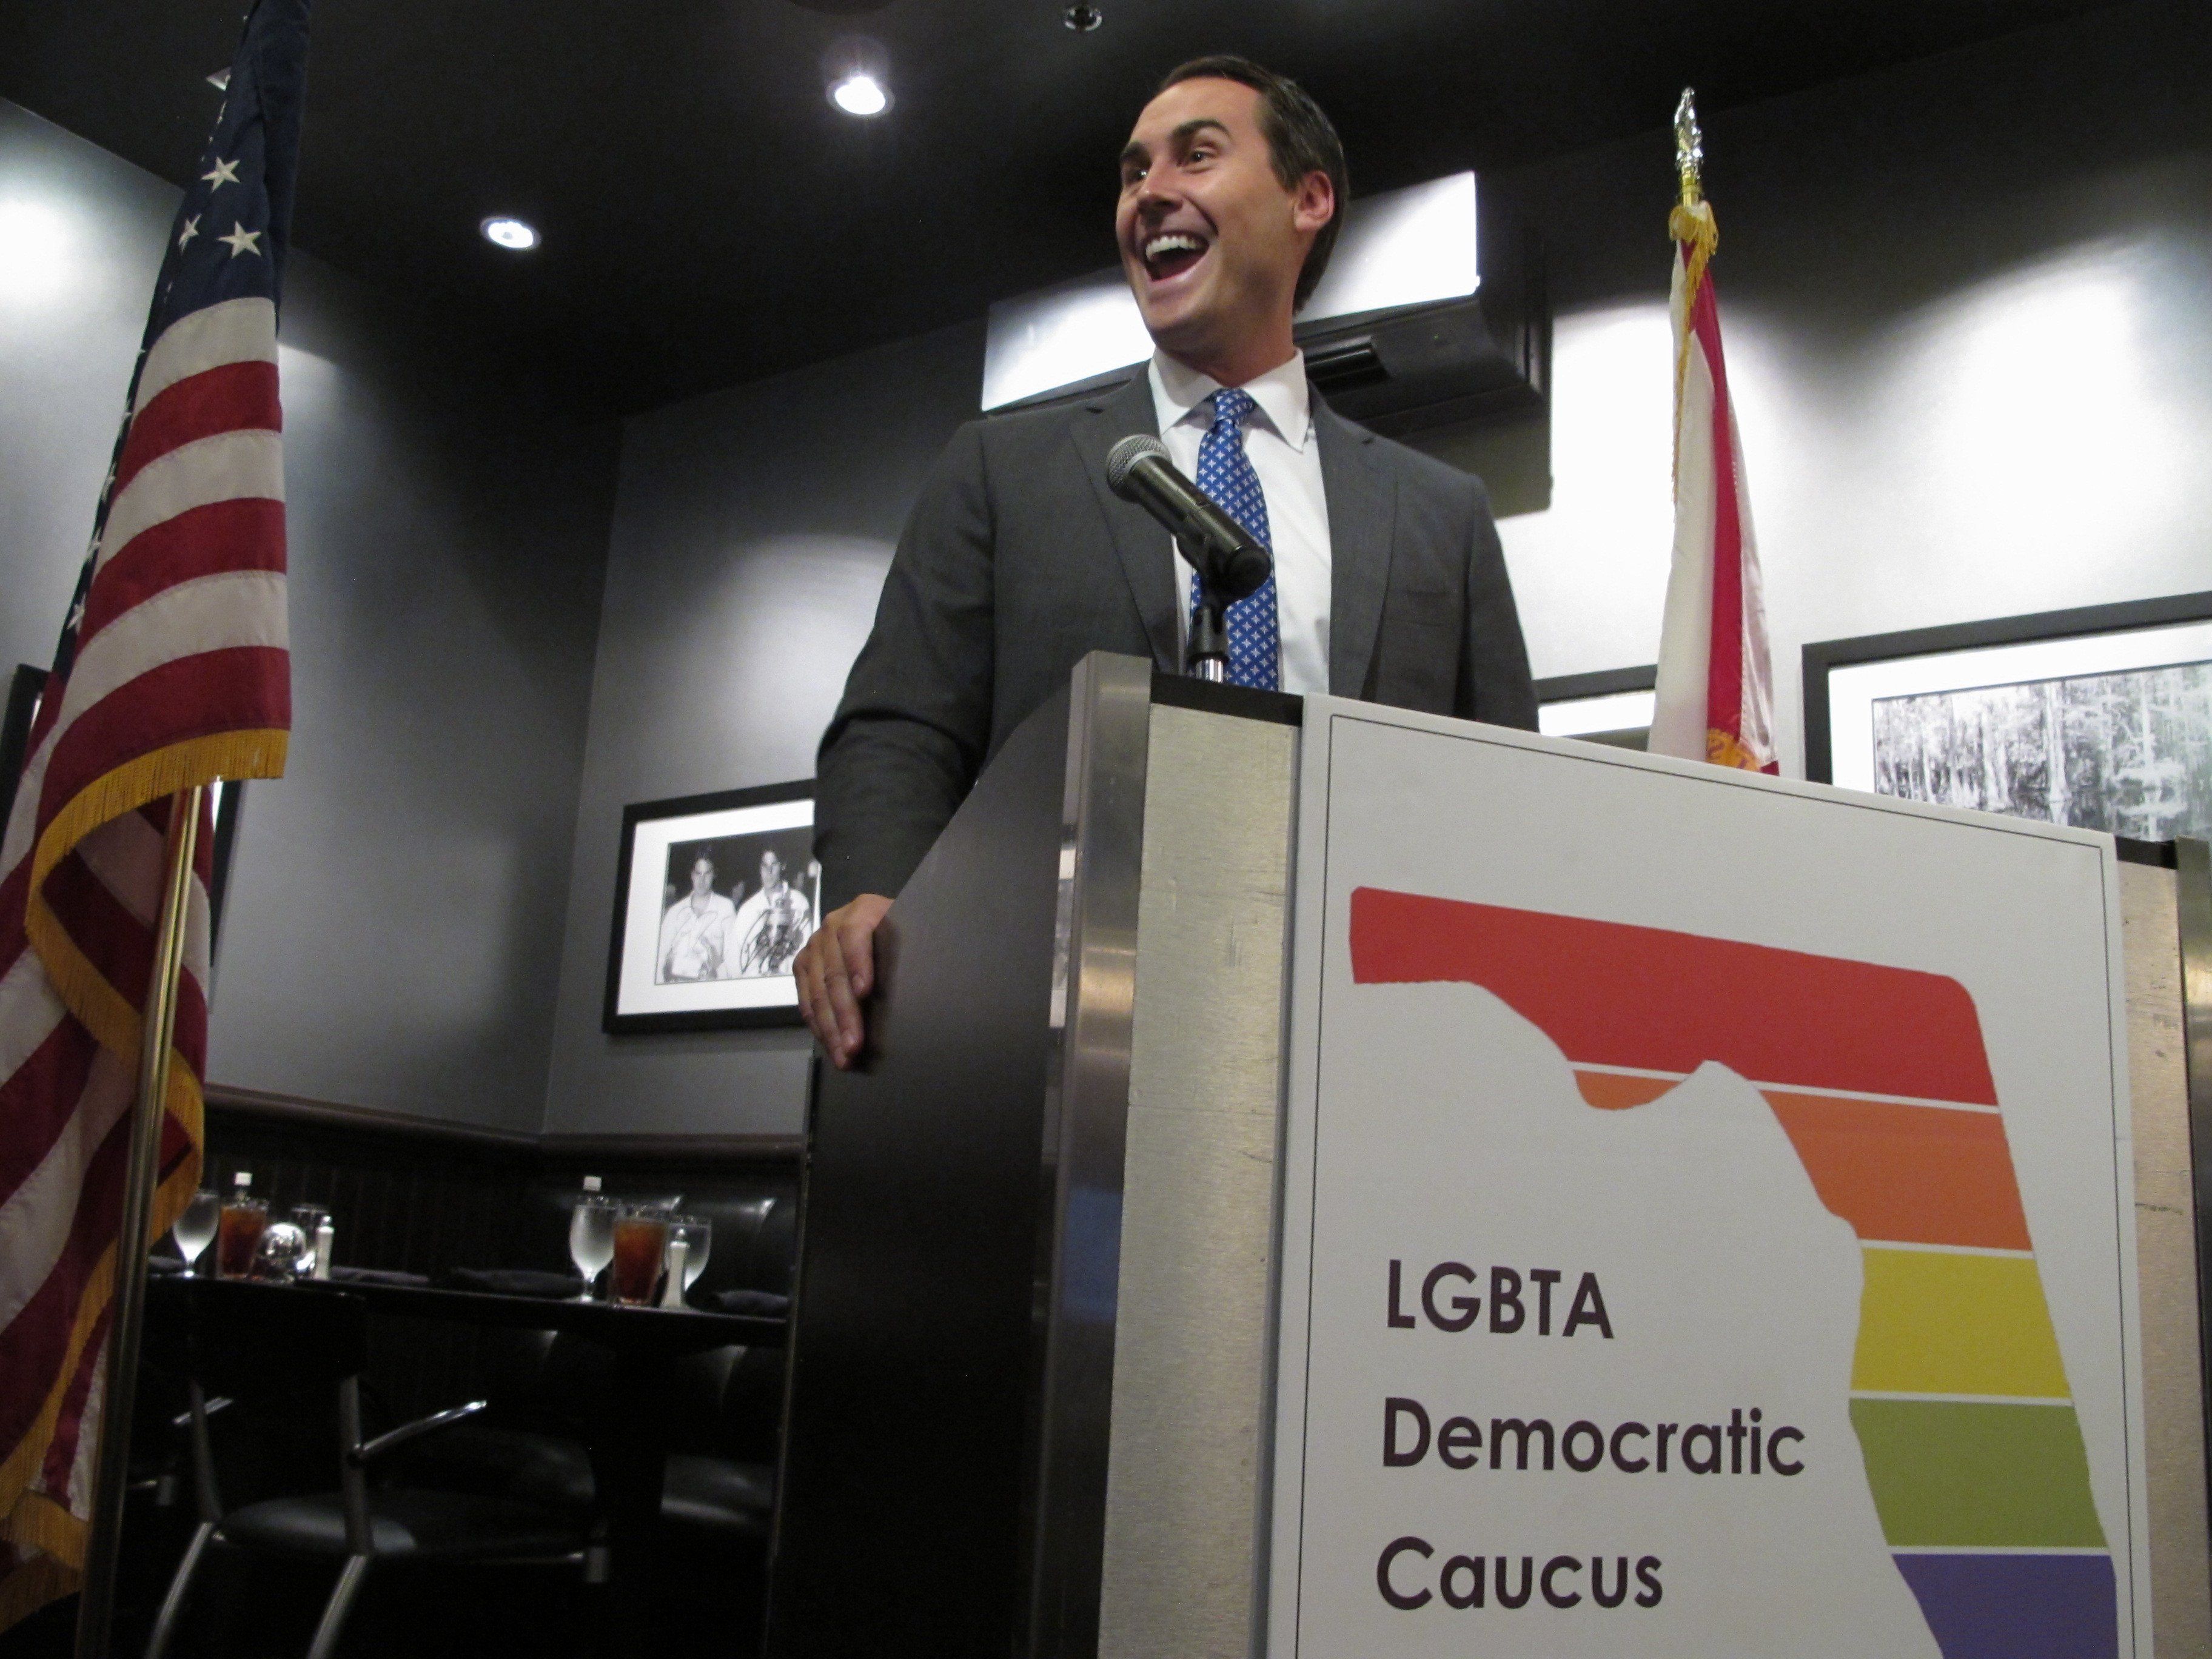 Politicians addressing gay tolerance